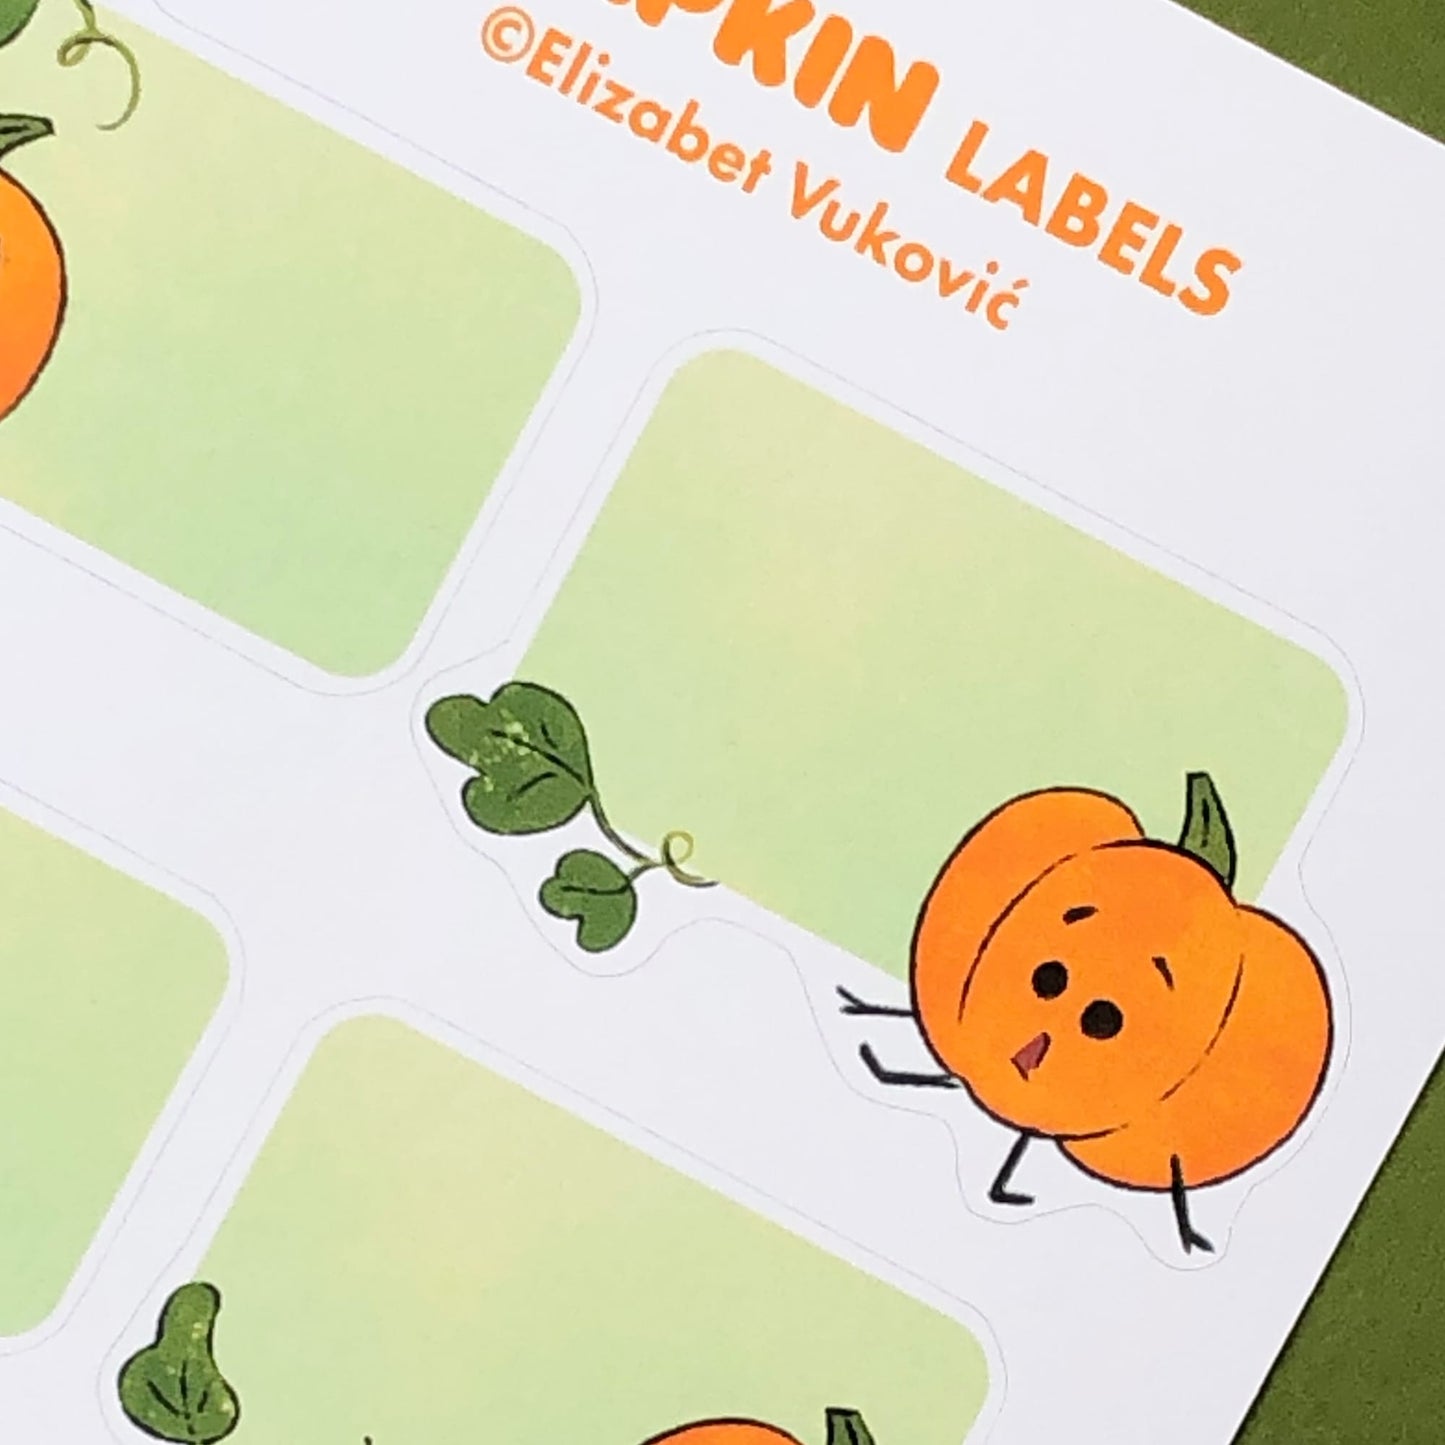 Pumpkins Labels Sticker Sheet